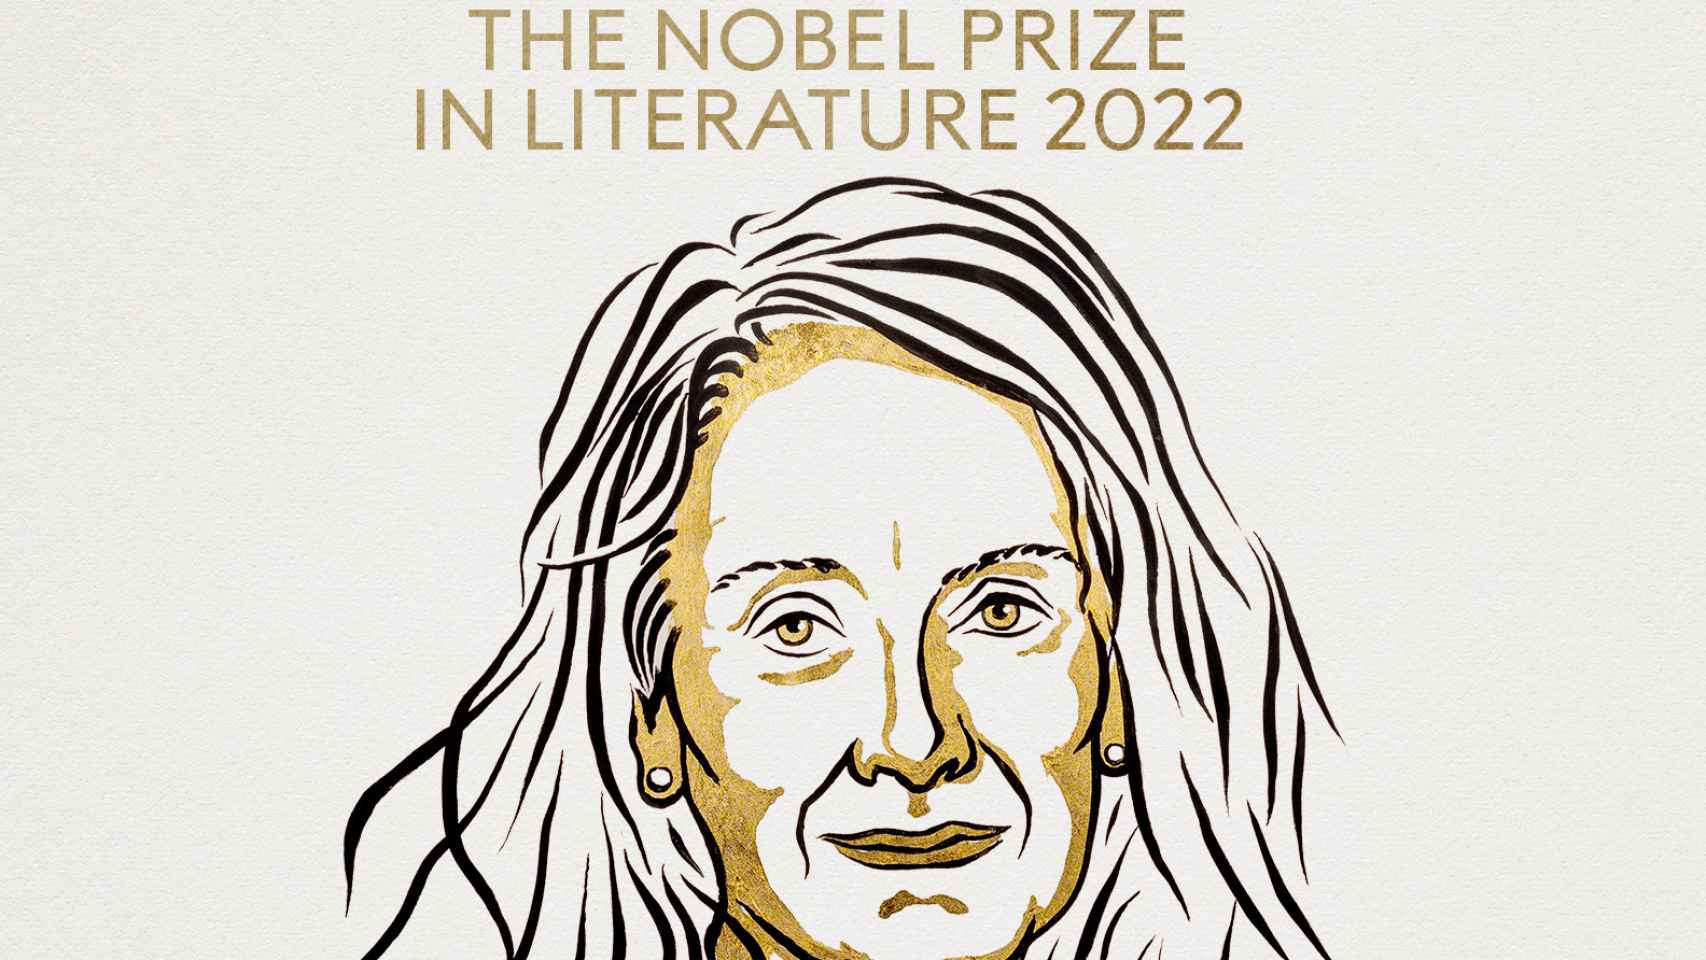 La escritora francesa Annie Ernaux, Premio Nobel de Literatura 2022.